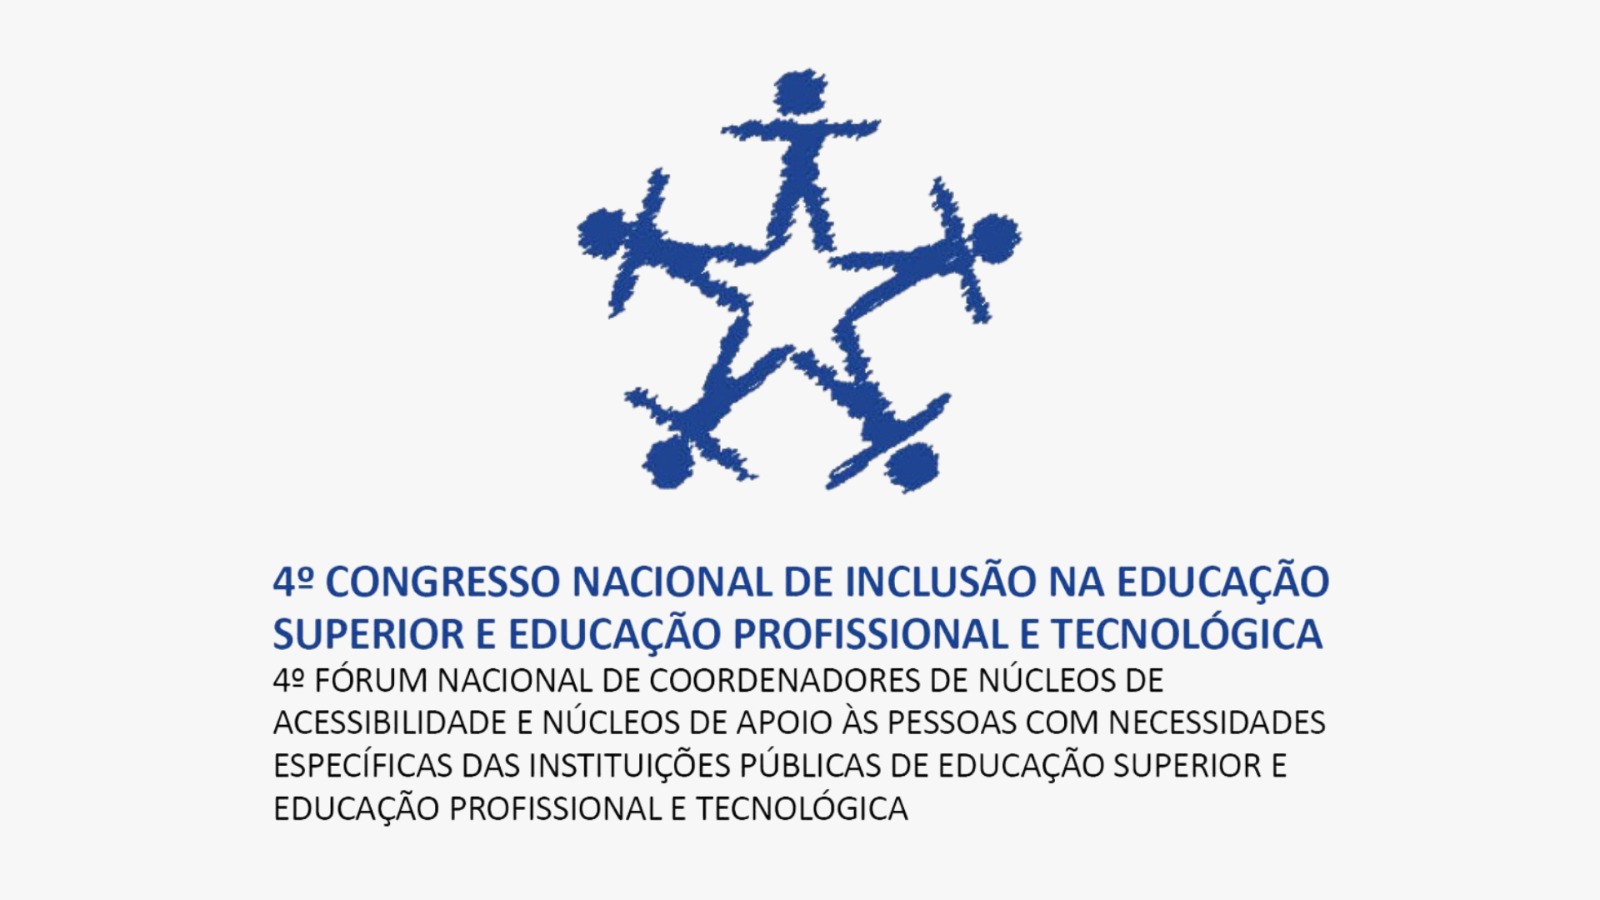 4º Congresso Nacional de Inclusão na Educação Superior e Educação Profissional Tecnológica